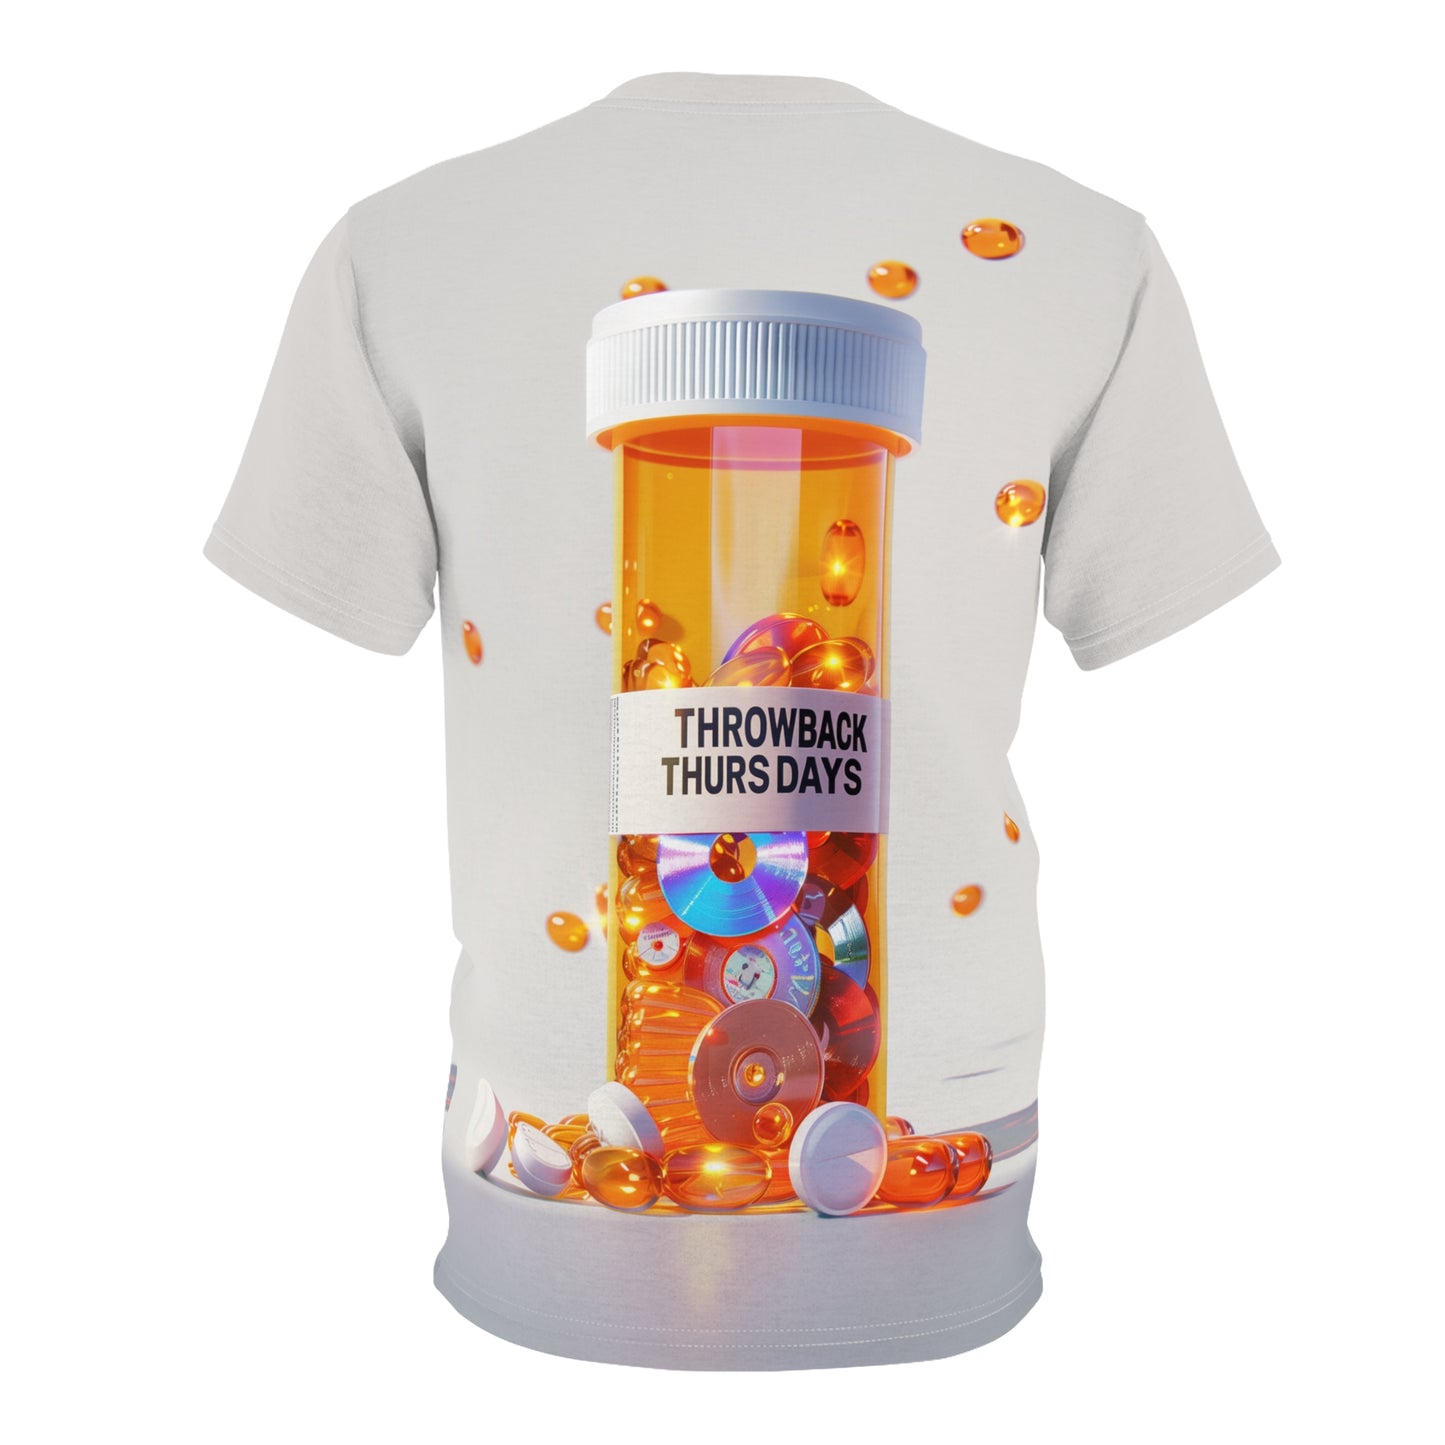 ThrowBack Thursdays Pill bottle  - Tee